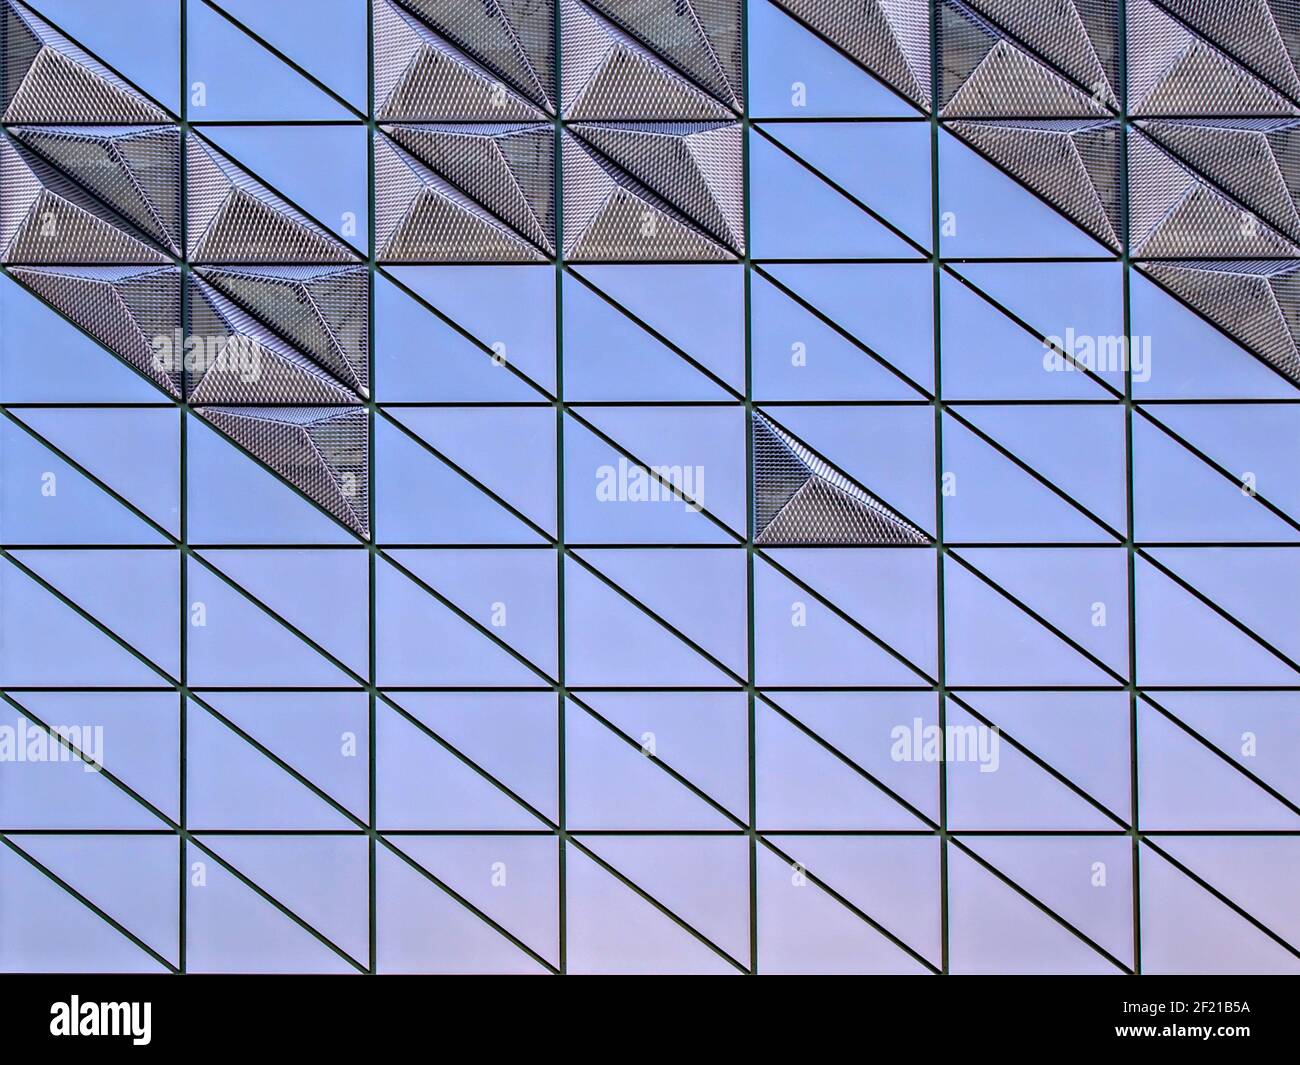 Facciata di un edificio moderno. Forme geometriche viola e lilla. Foto Stock